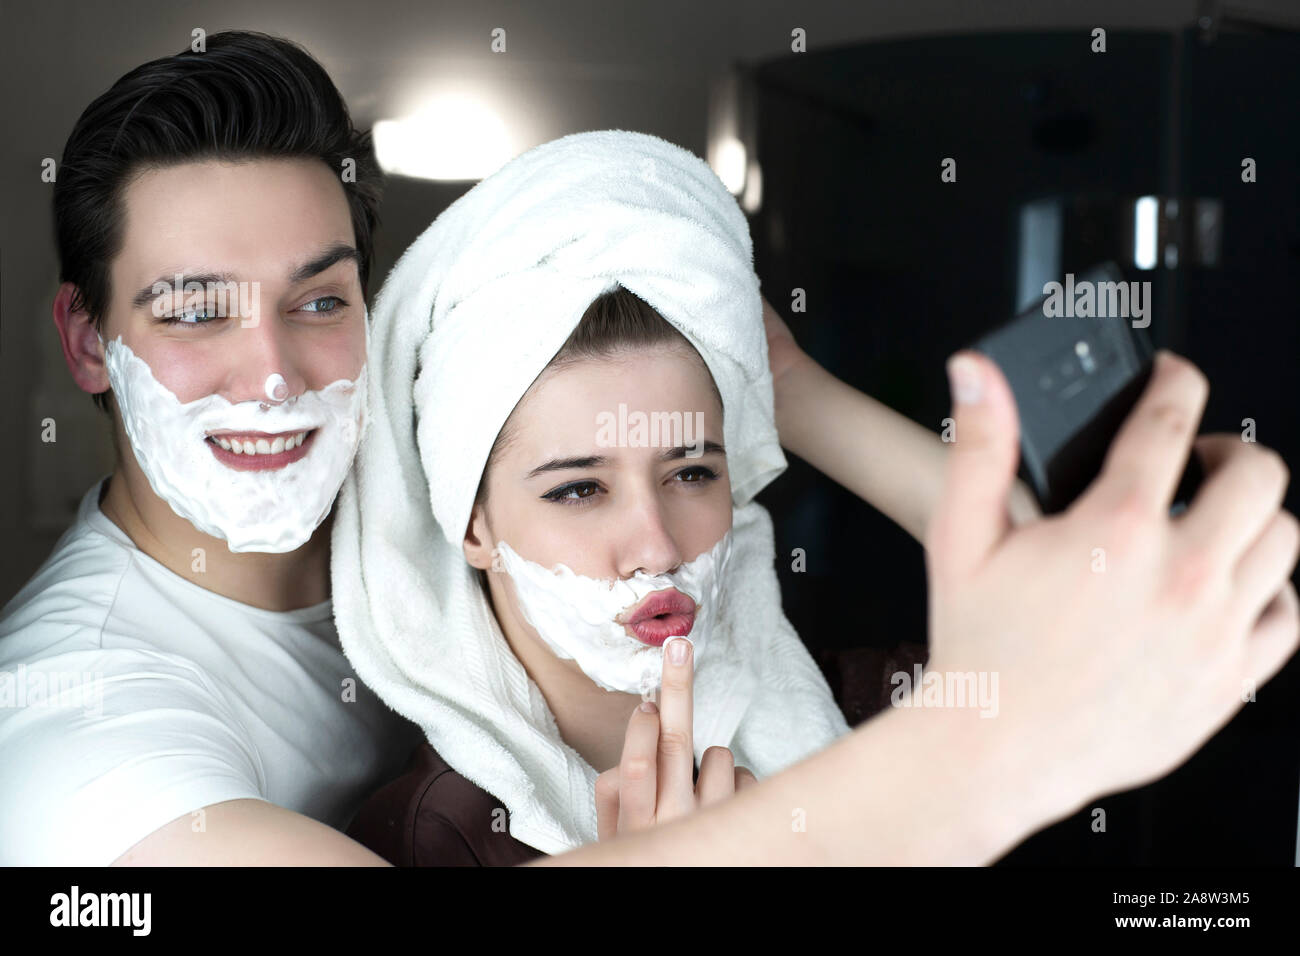 Lustig Paar gutaussehenden Mann und schöne Frau ein für selfie suchen lustige sowohl mit Rasierschaum auf ihren Gesichtern in Bad spielerische darstellen. Stockfoto